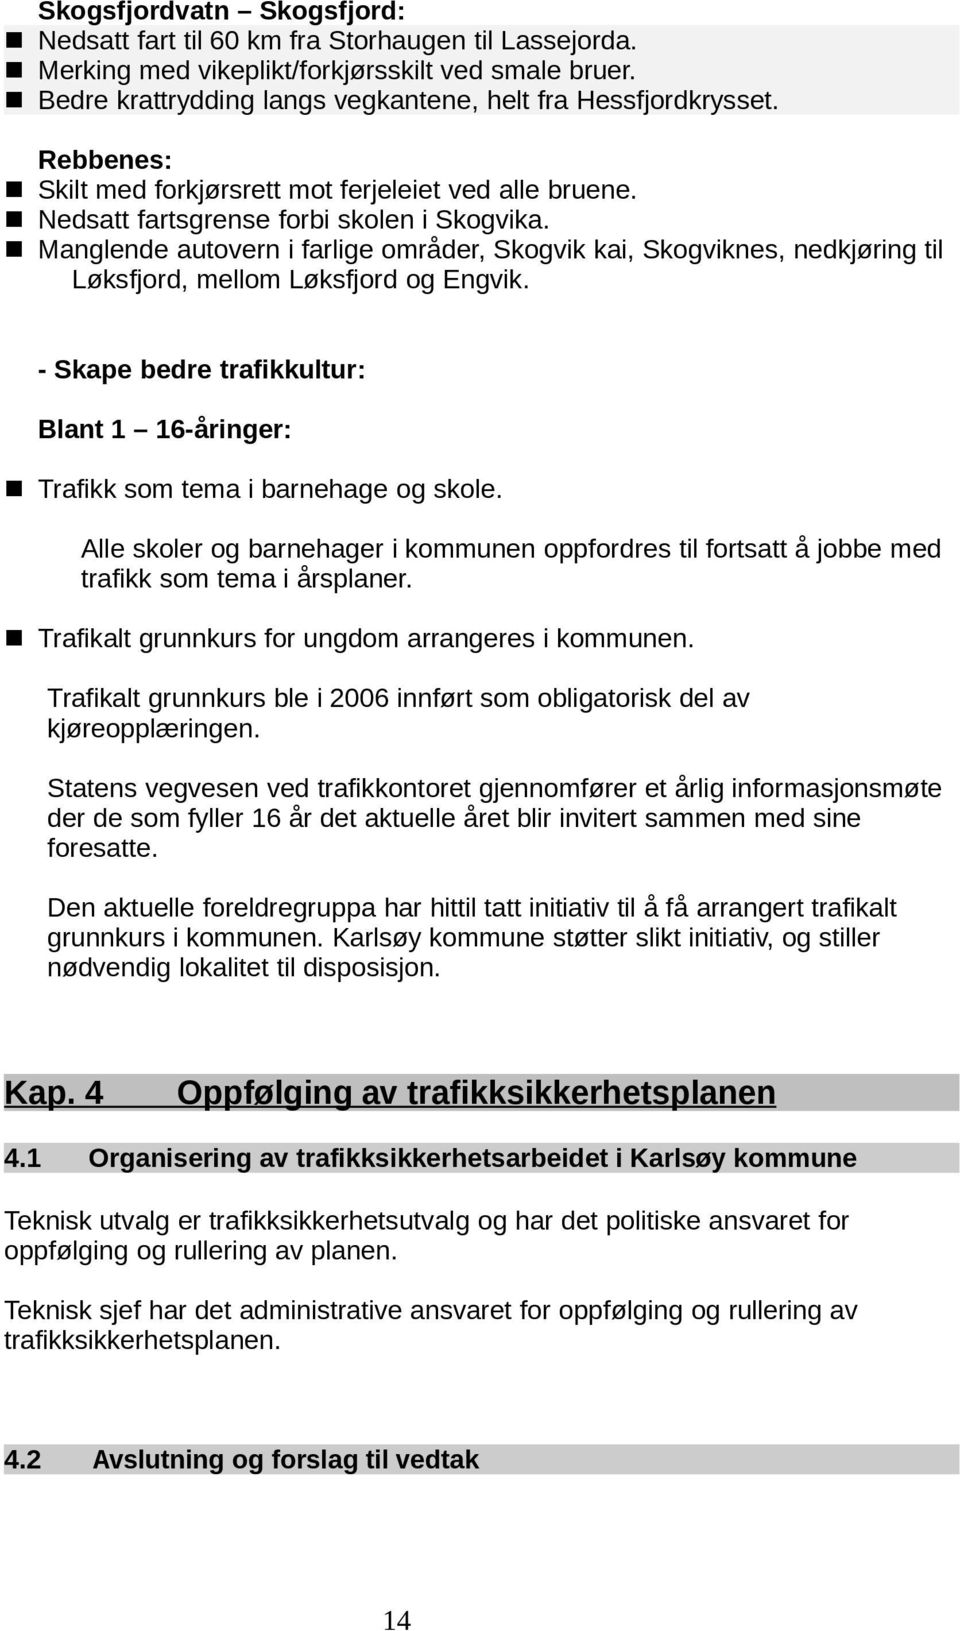 n Manglende autovern i farlige områder, Skogvik kai, Skogviknes, nedkjøring til Løksfjord, mellom Løksfjord og Engvik.